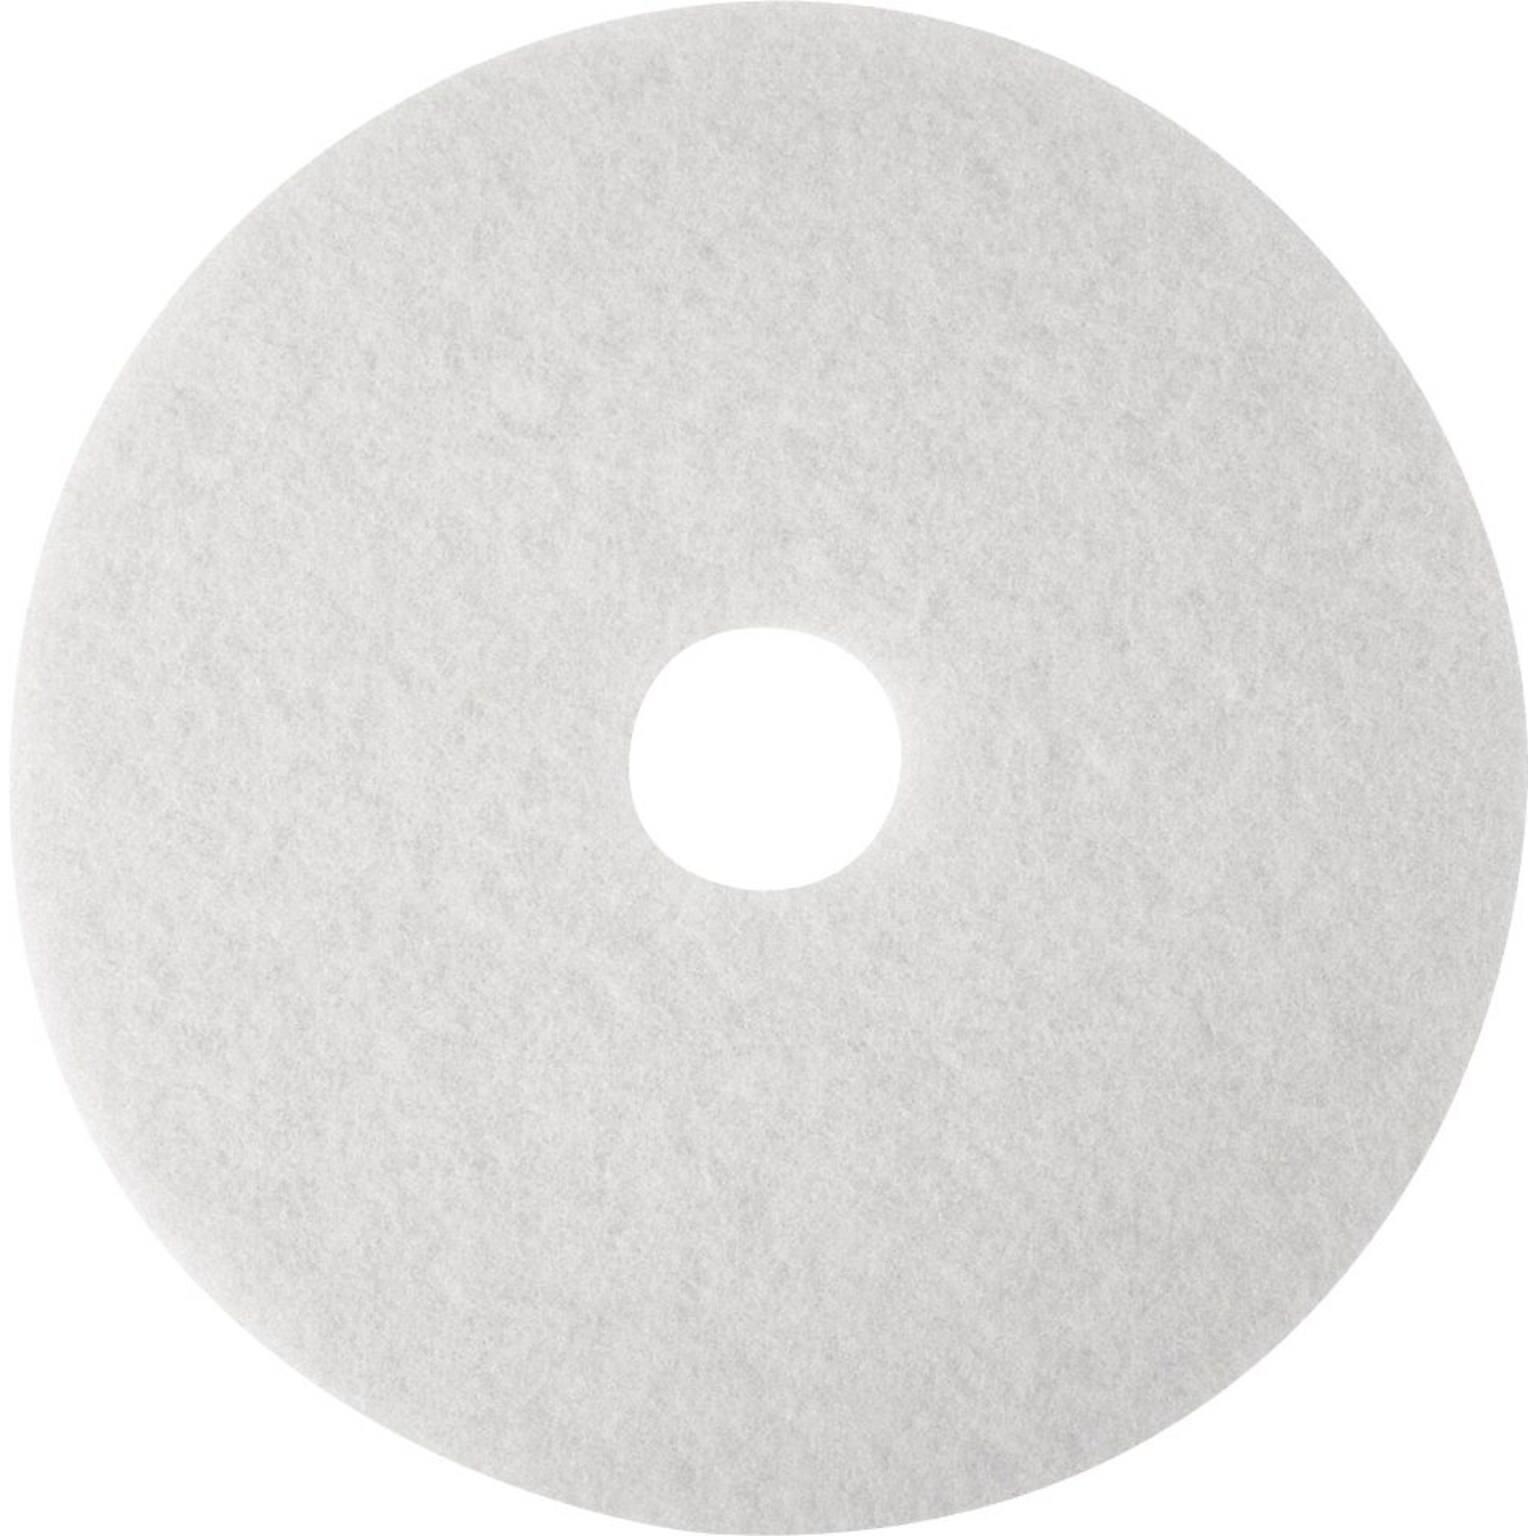 3M 16 Polishing Floor Pad, White, 5/Carton (410016)